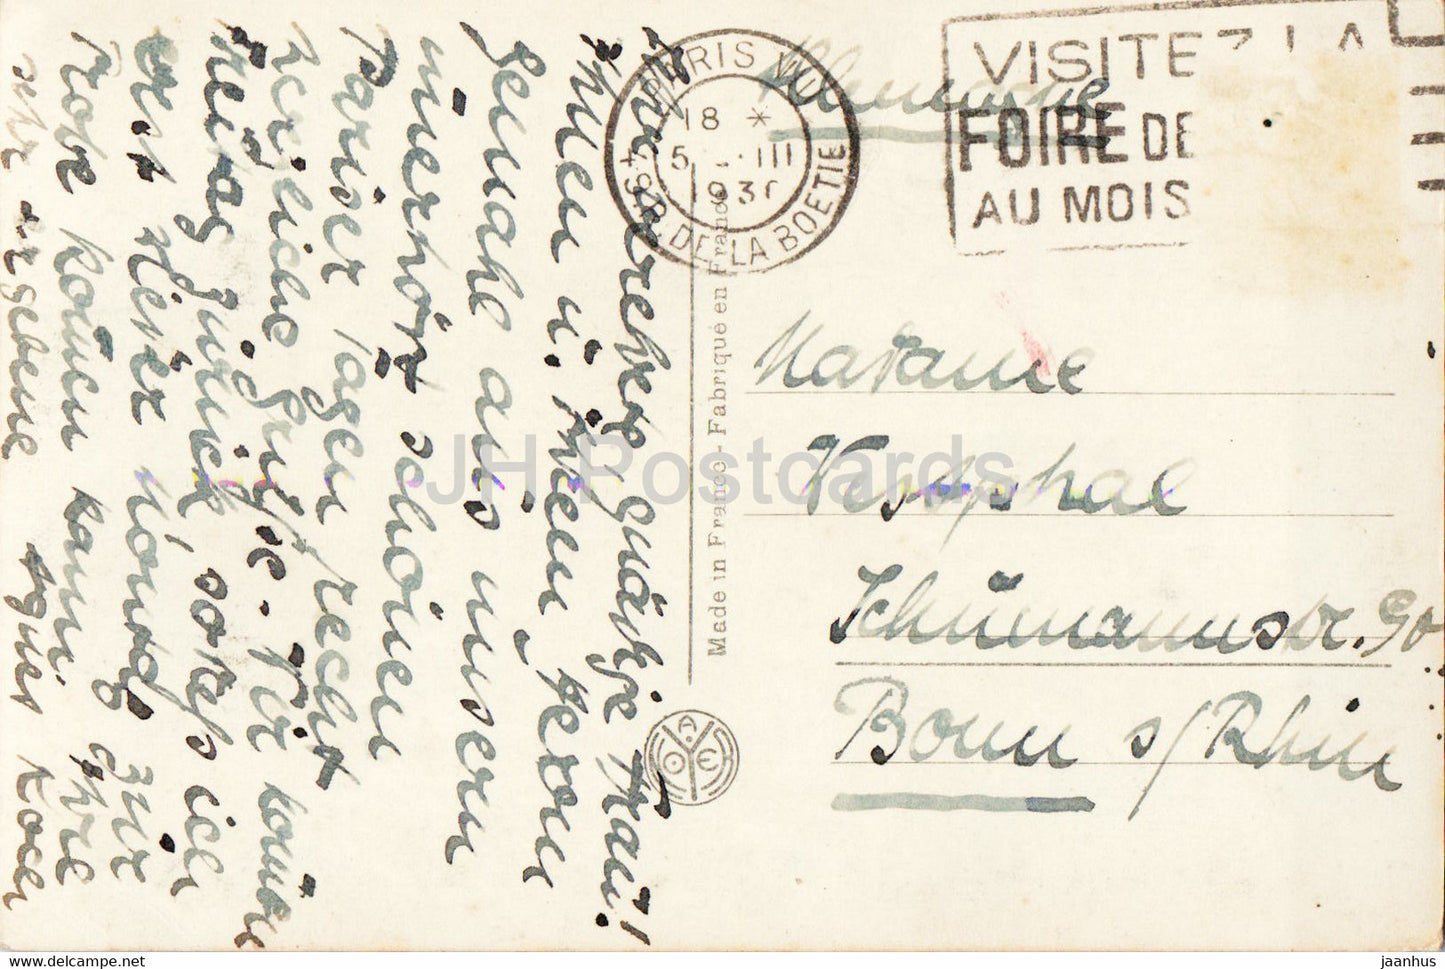 Paris - La Place de la Concorde et la Madeleine - 295 - old postcard - 1930 - France - used